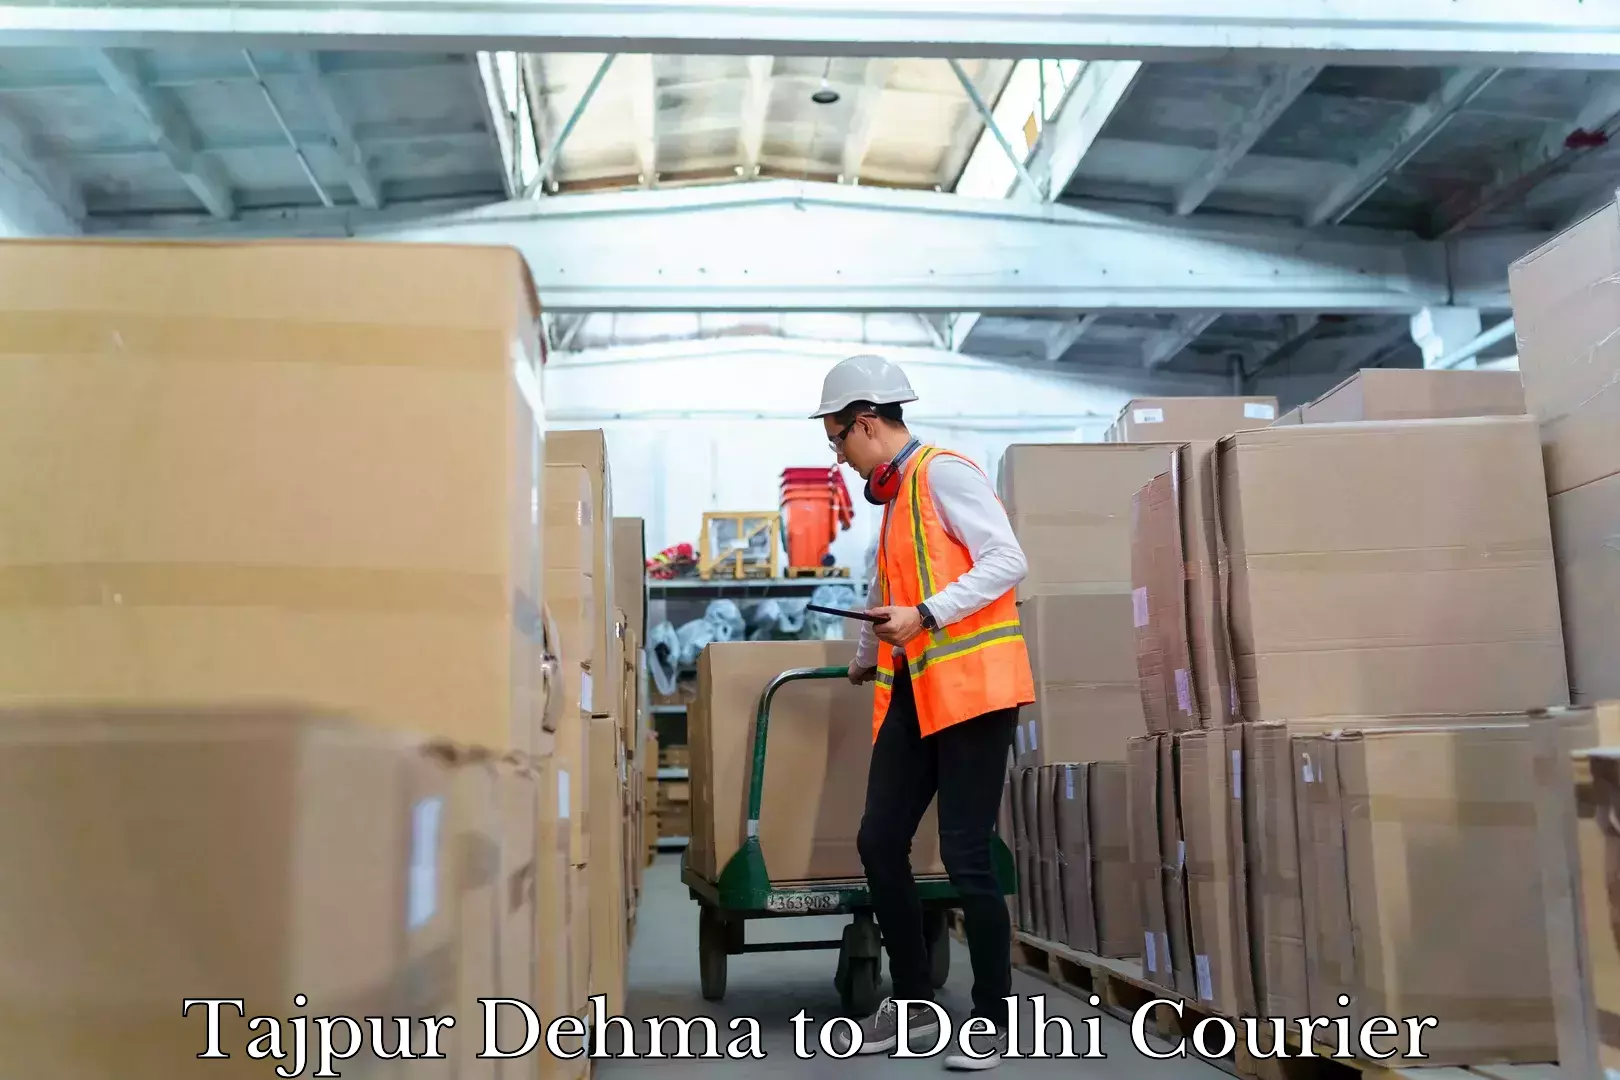 Urban courier service Tajpur Dehma to Delhi